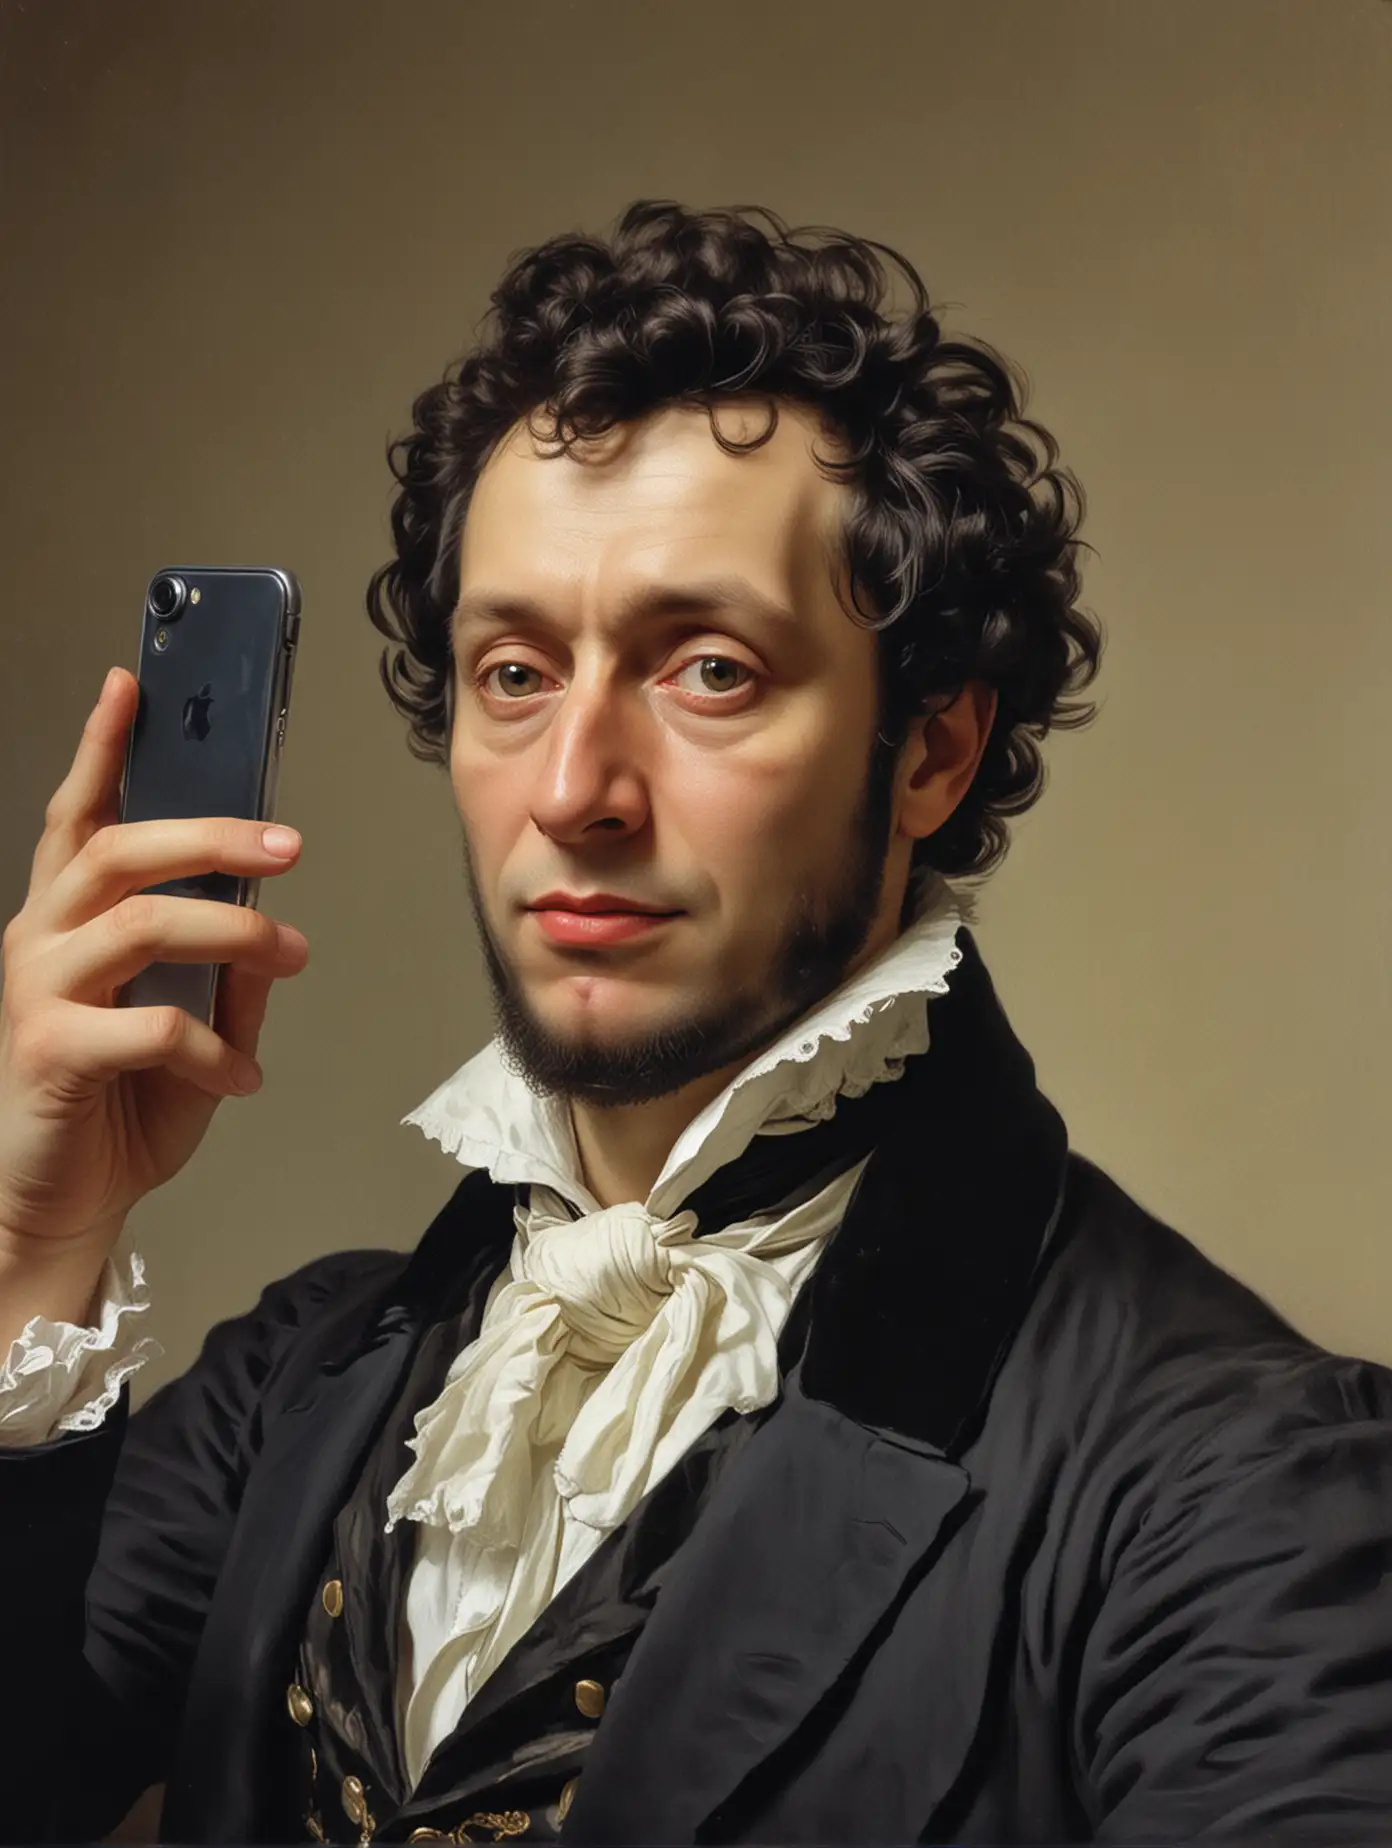 Pushkin takes a selfie